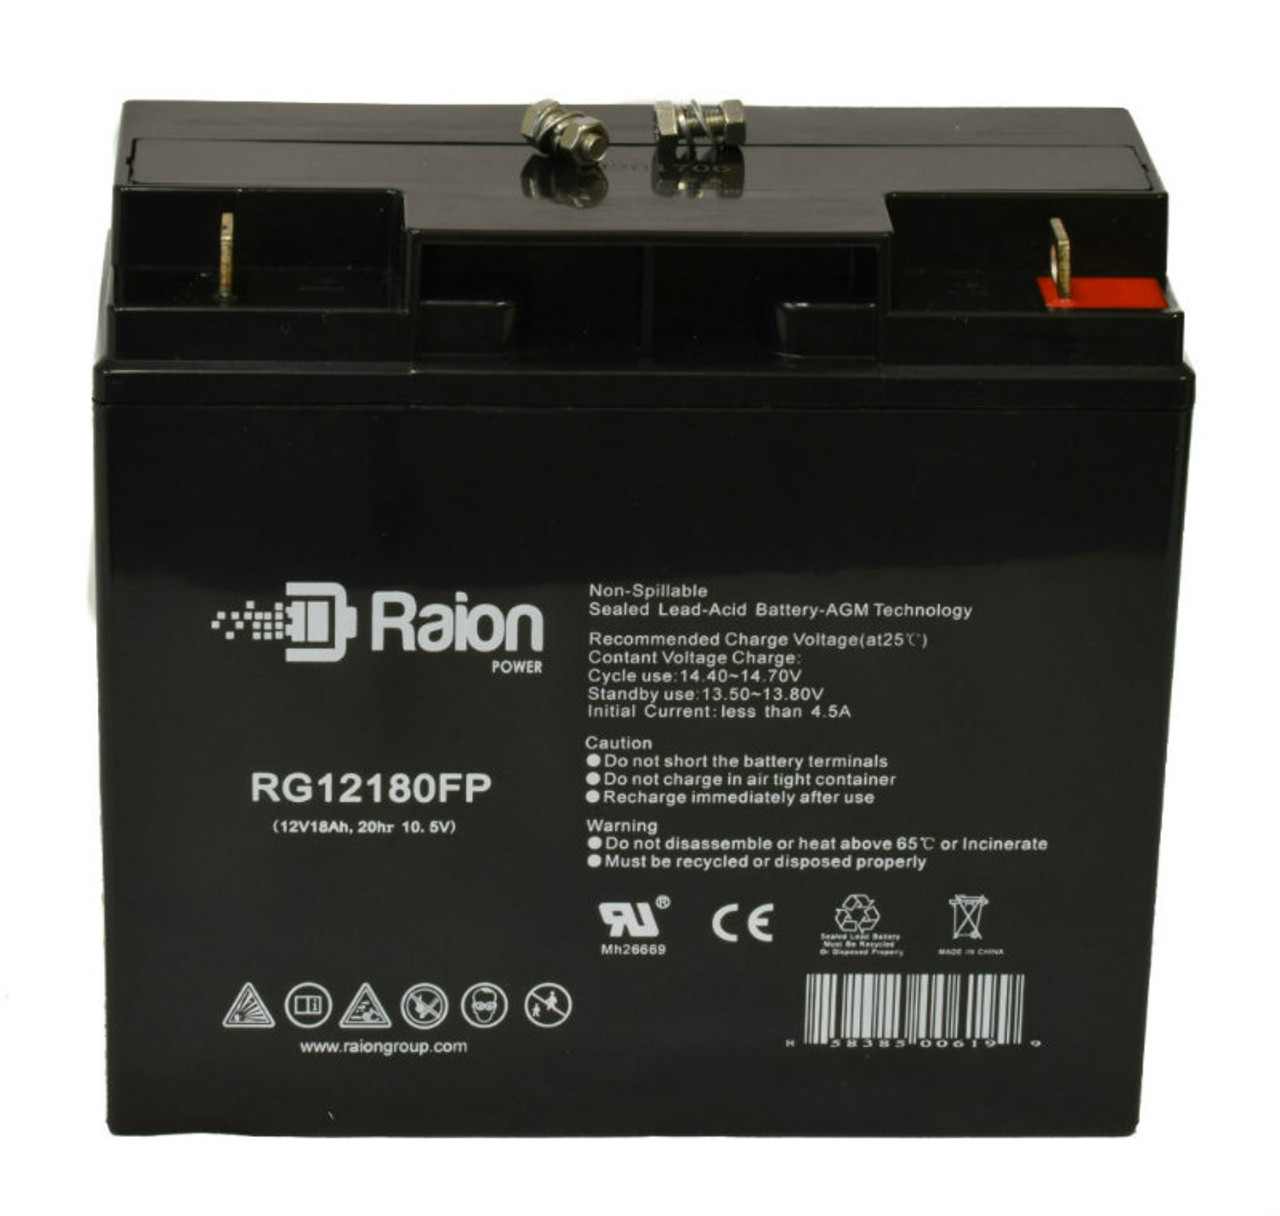 Raion Power RG12180FP 12V 18Ah Lead Acid Battery for Expocell P212/180